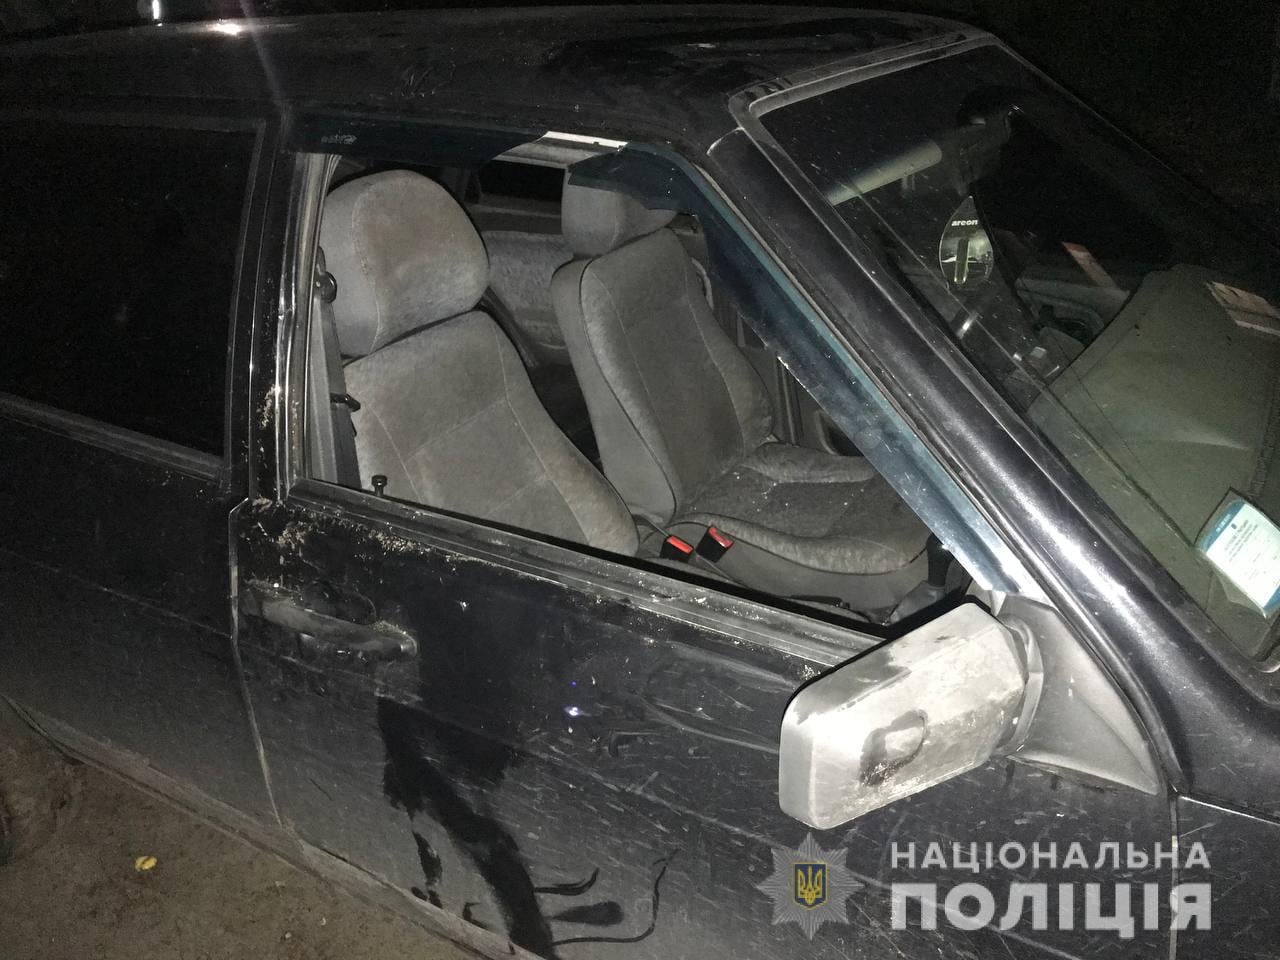 Мужчина за ночь повредил десять авто. Скриншот из фейсбука Нацполии Харьковской области